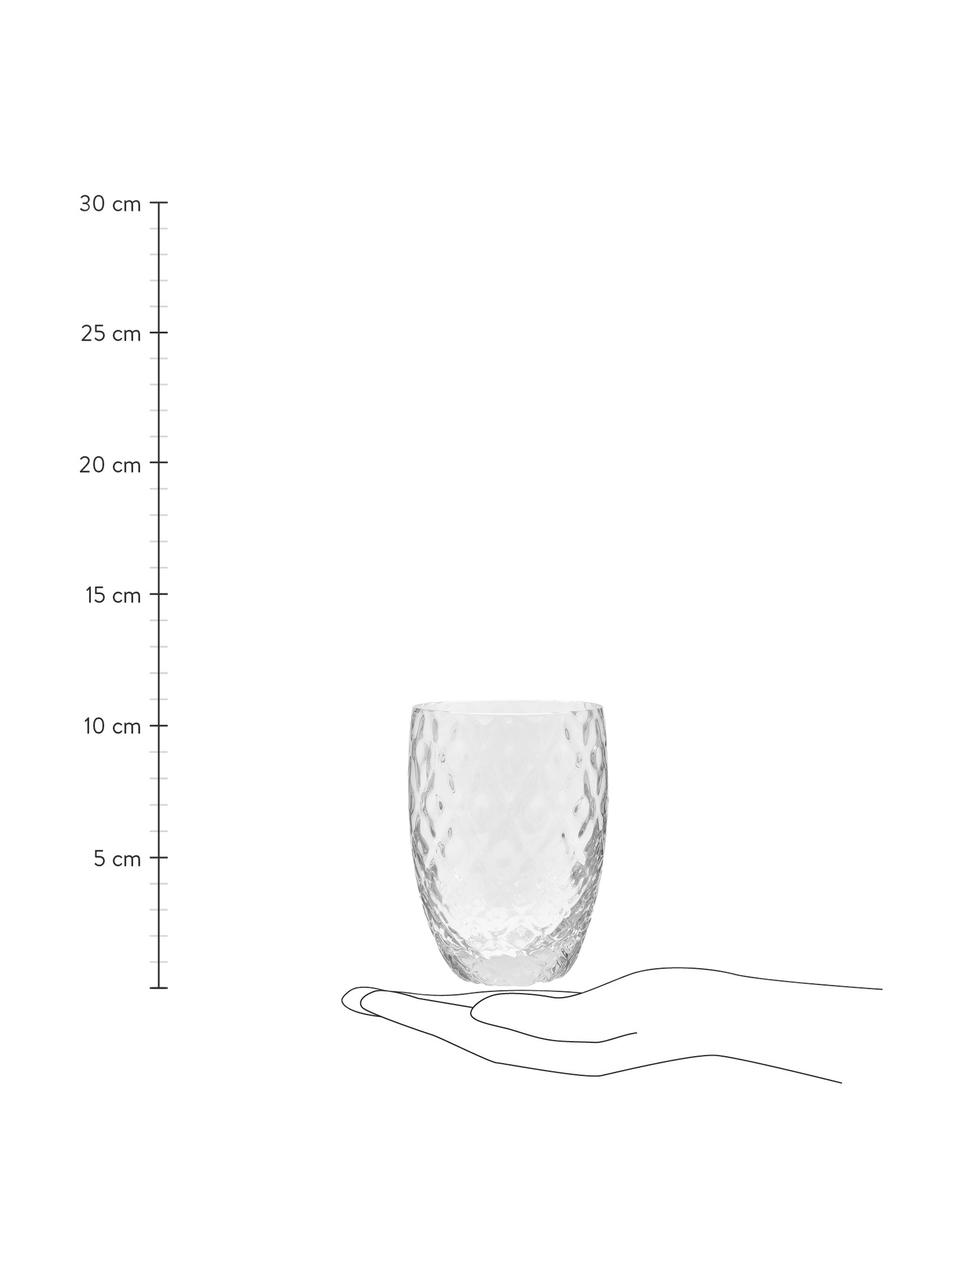 Komplet szklanek ze szkła dmuchanego Melting Pot Calm, 6 elem., Szkło, Transparentny, biały, Ø 7-10 x W 9-11 cm, 270 do 440 ml